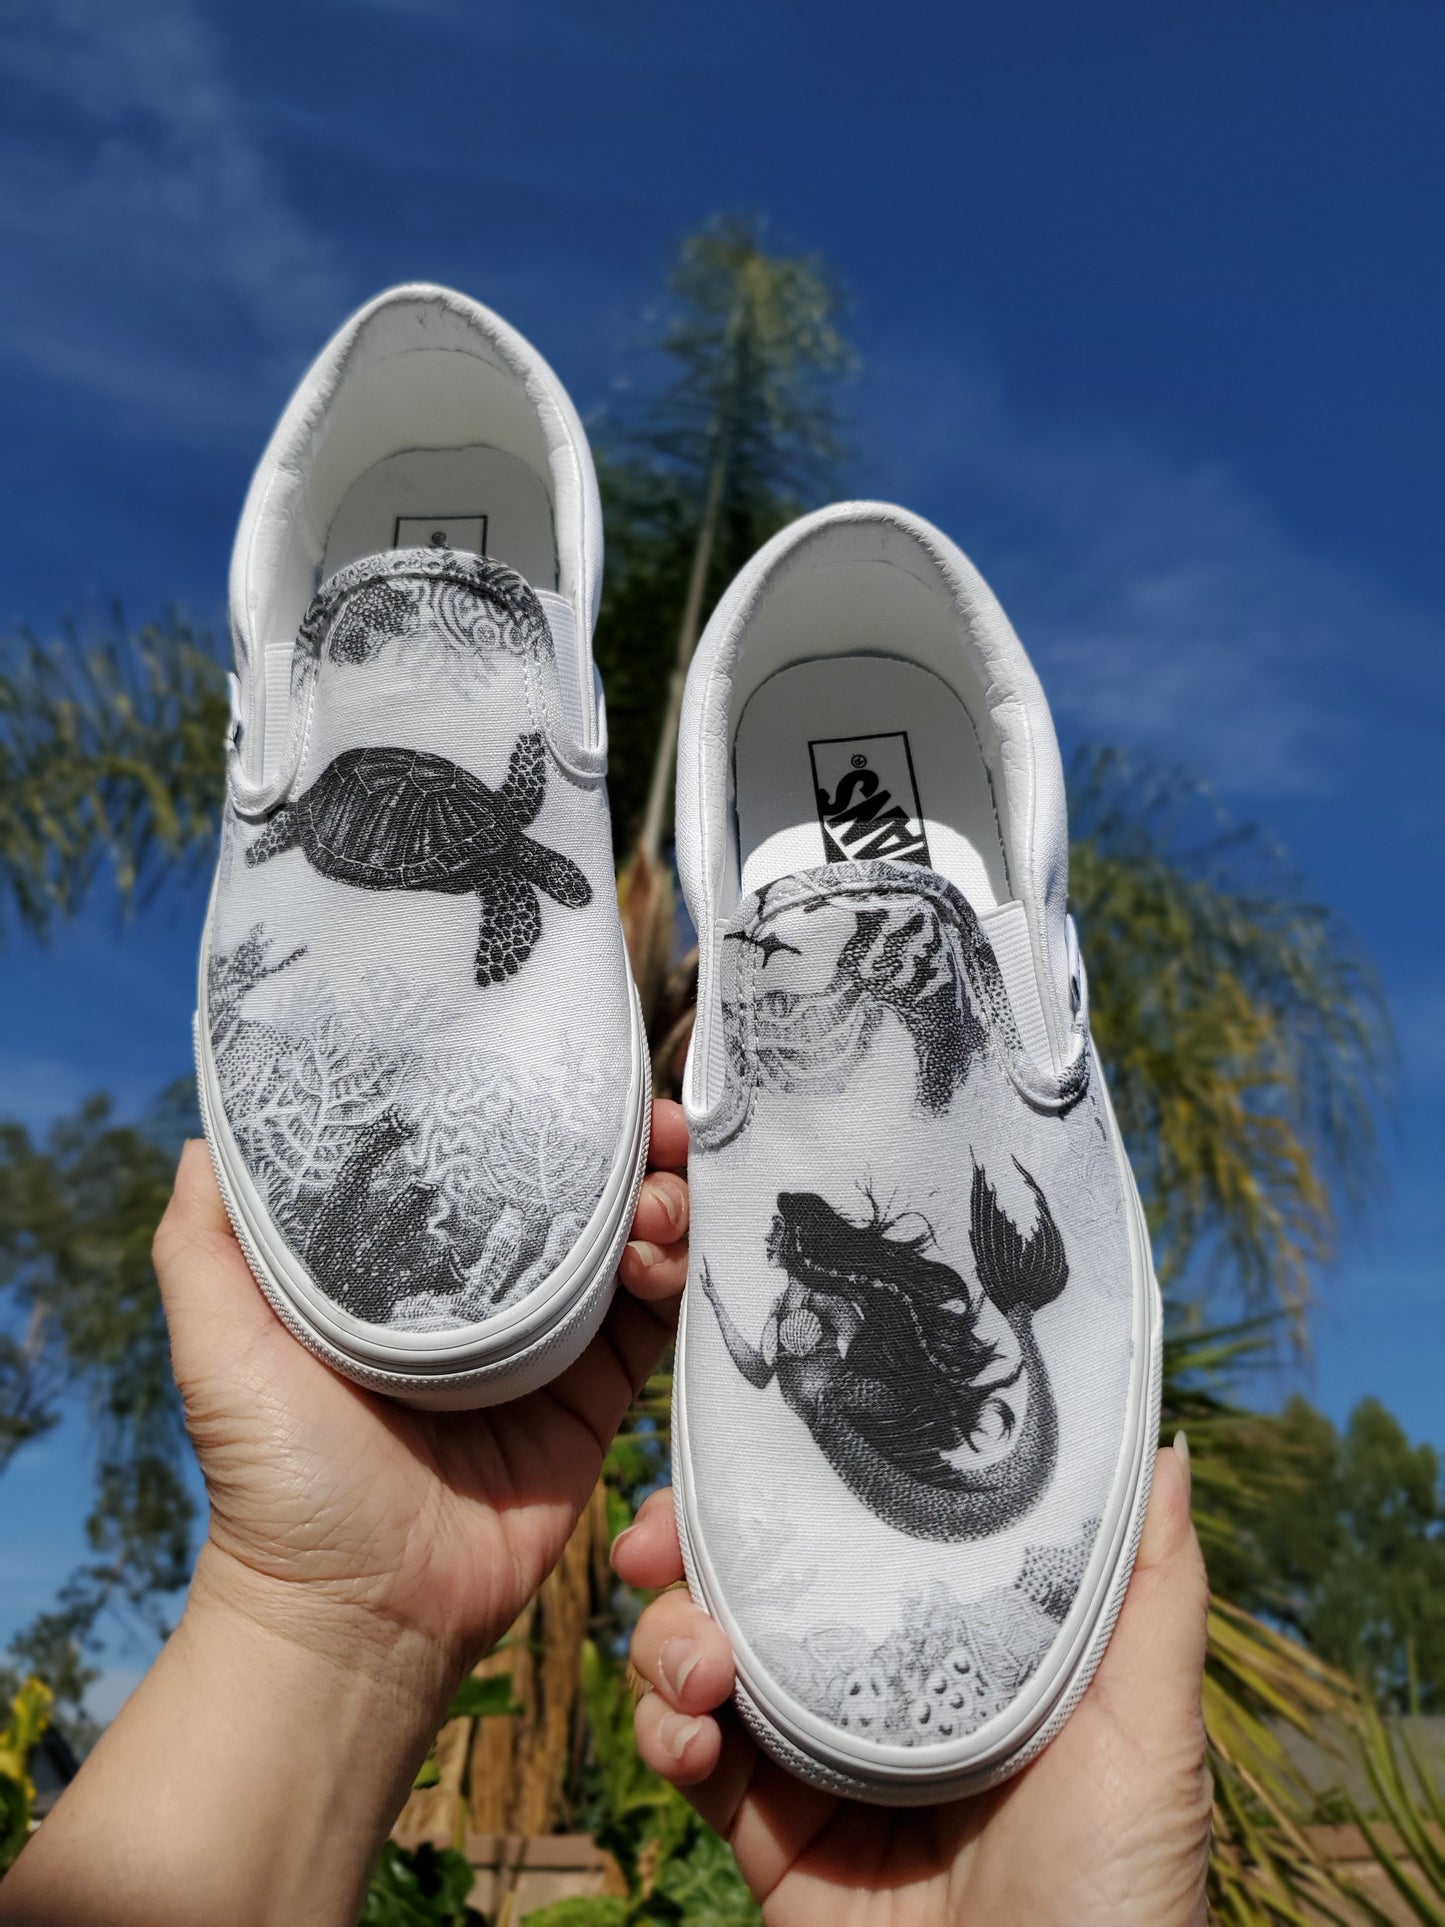 Dream of a Reef Slip On Vans - Black & White Vans - Custom Vans Shoes